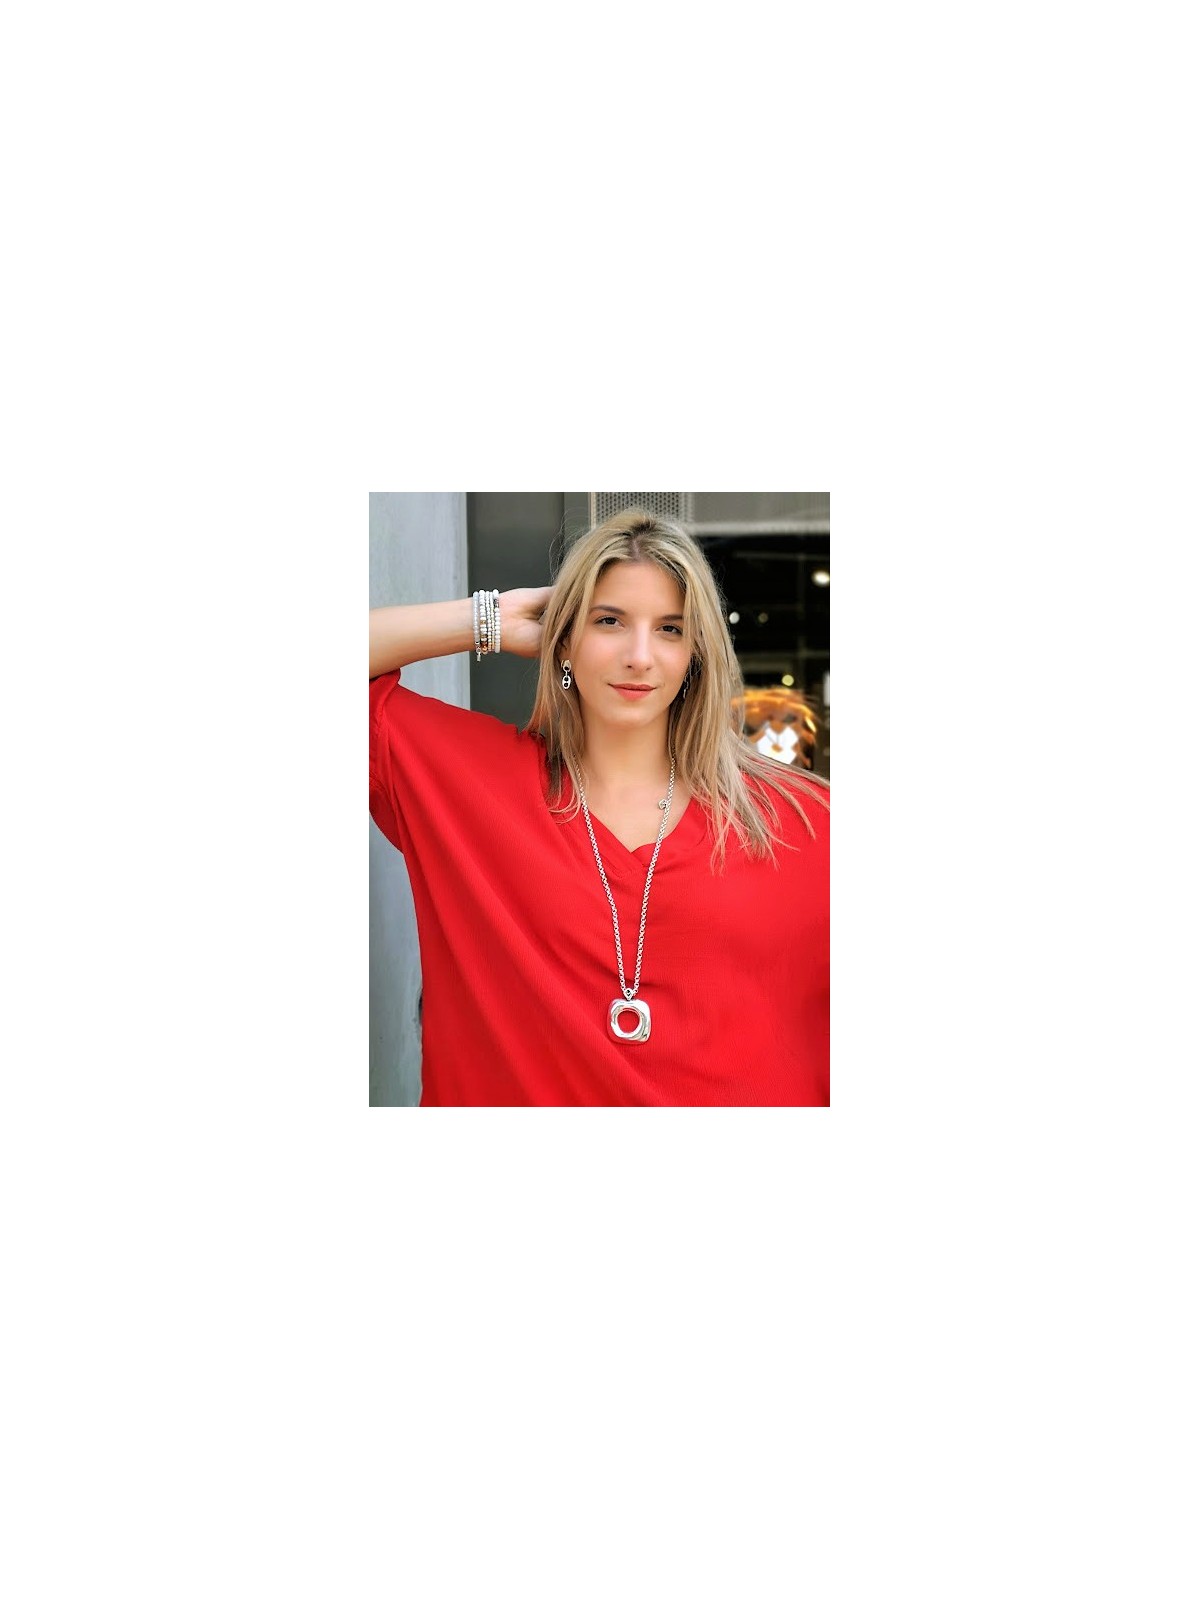 Sautoir Ciclon signé argenté | 2 vue de face porté | Tilleulmenthe boutique de mode femme en ligne